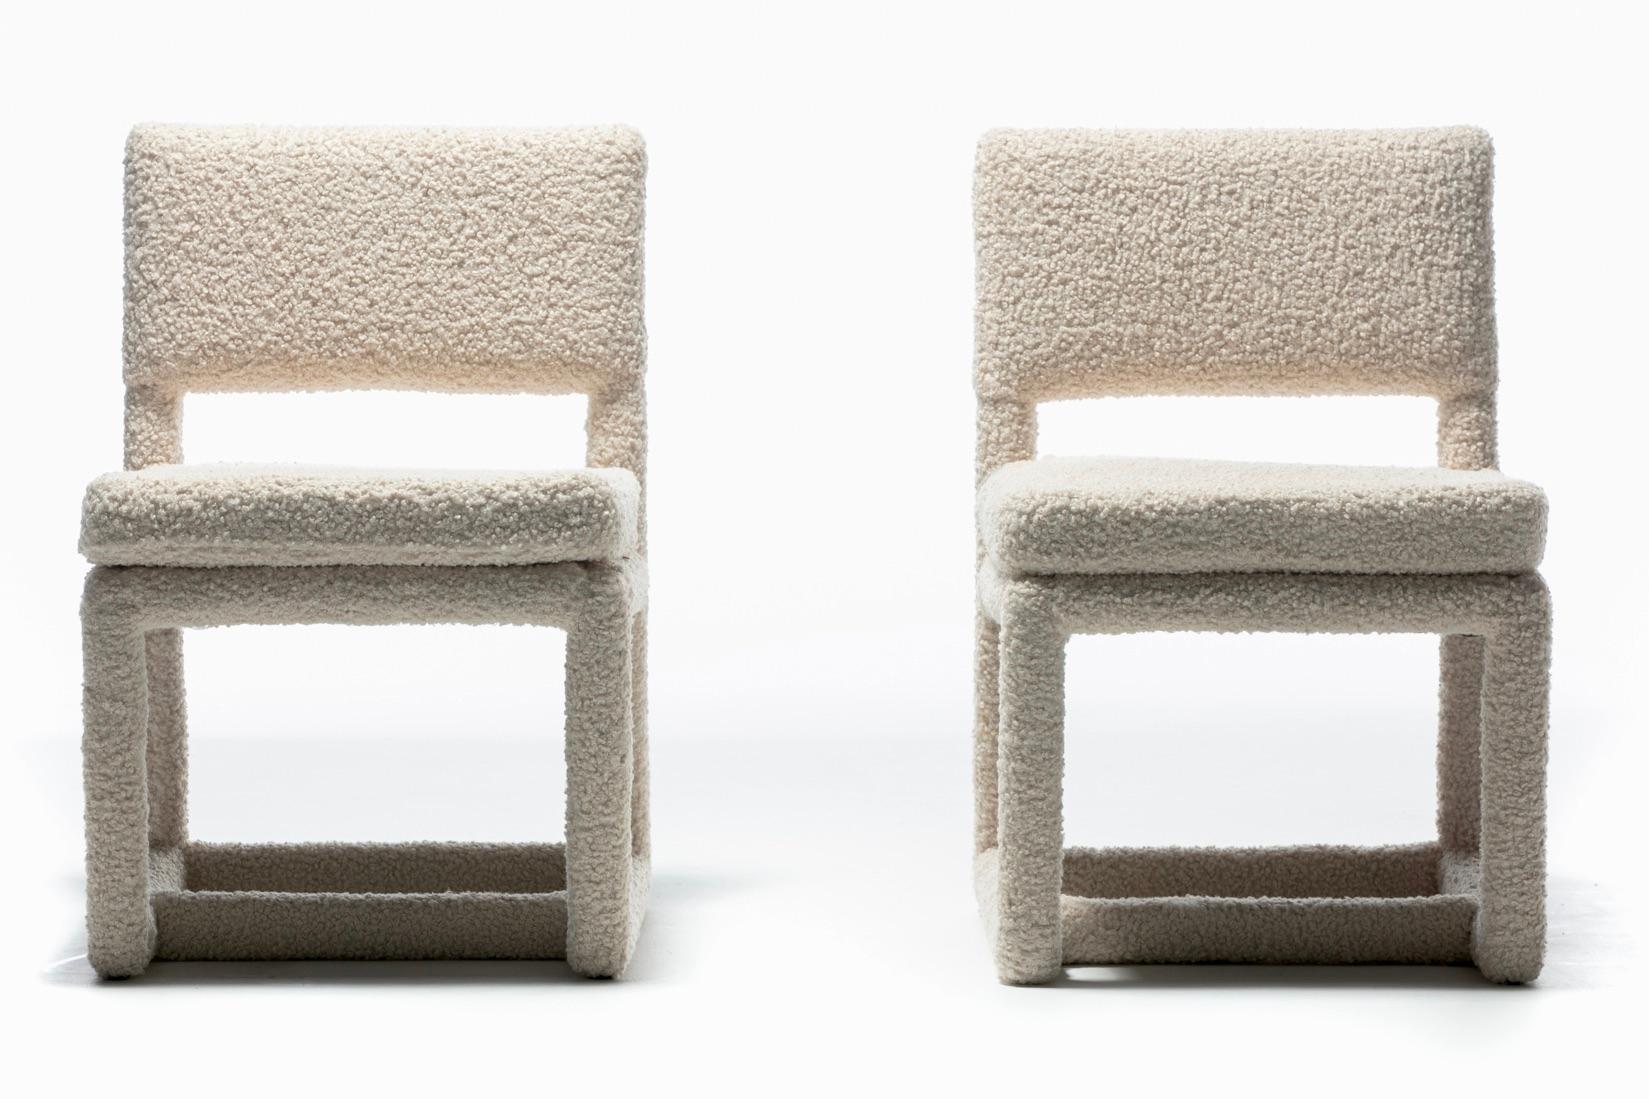 Sexy Satz von acht Parsons-Esszimmerstühlen, entworfen von Milo Baughman für Thayer Coggin, neu professionell gepolstert in weichem elfenbeinfarbenem weißem Bouclé, das als sehr haltbar eingestuft wird (über 50.000 Doppelabreibungen). Die